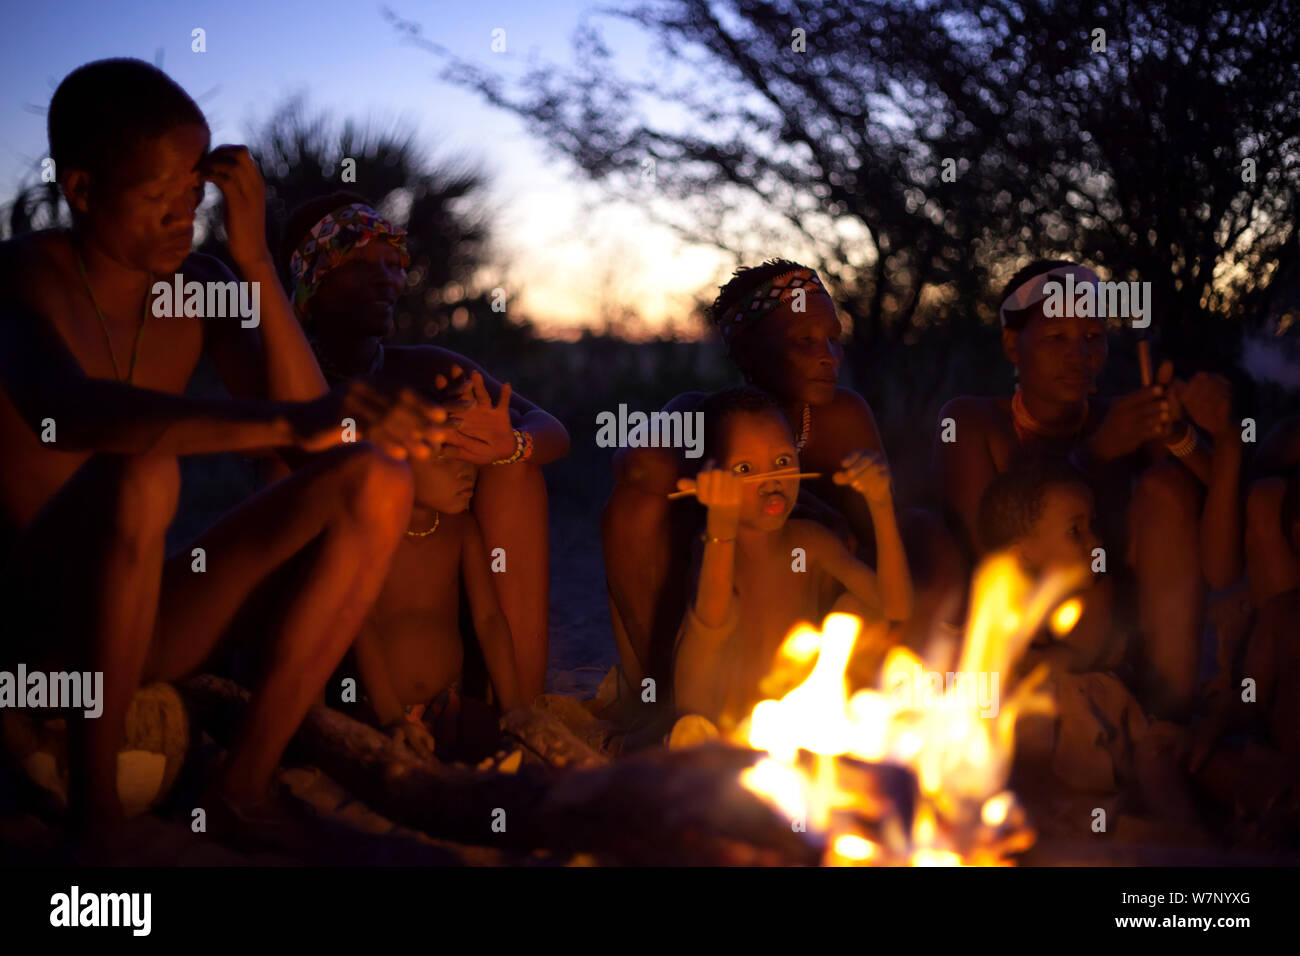 Zu/'hoasi Bushmen men, women and children sit around a fire at dusk in the Kalahari, Botswana. April 2012. Stock Photo